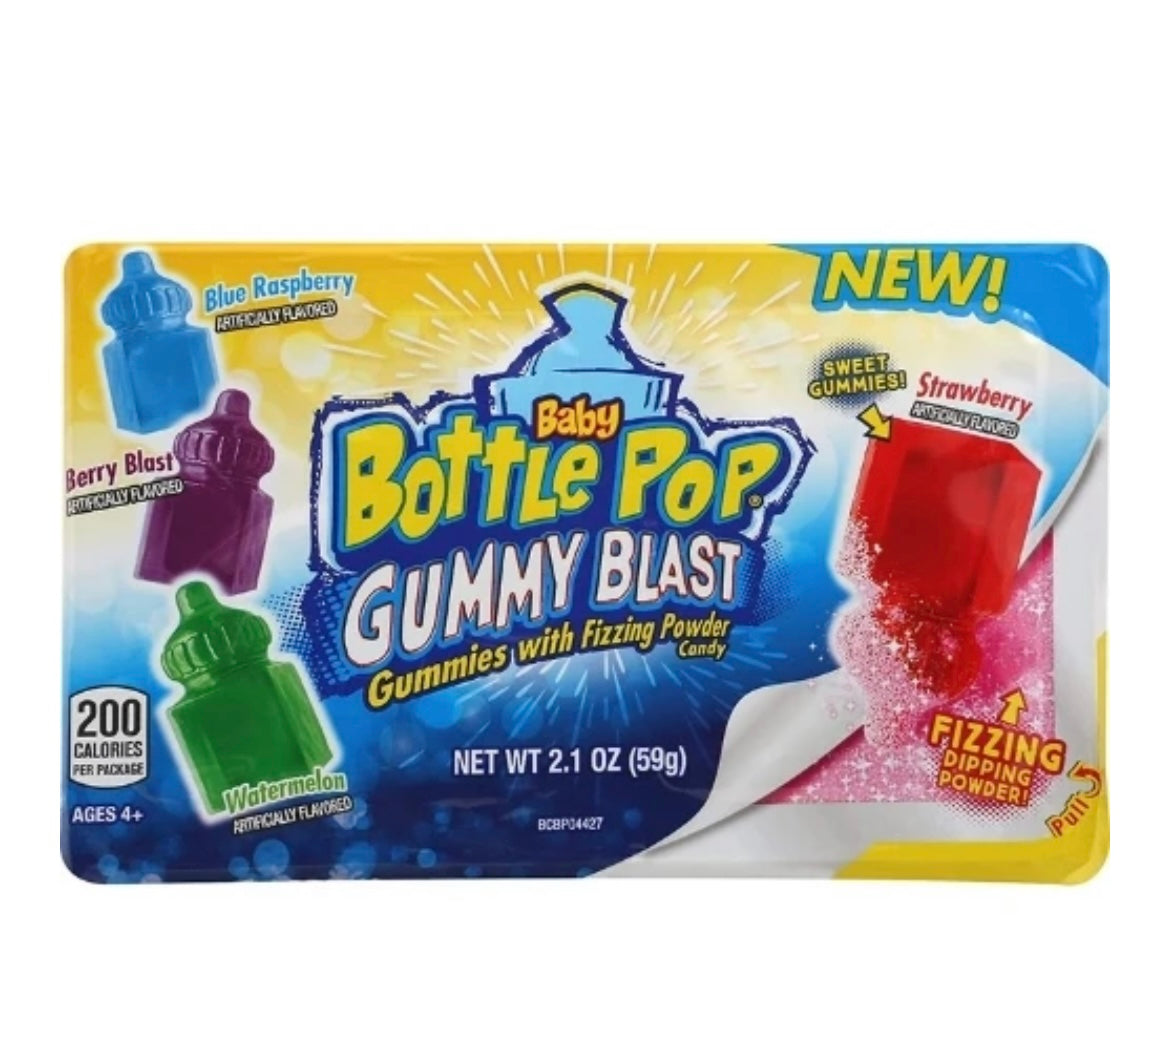 Baby bottle gummy blast